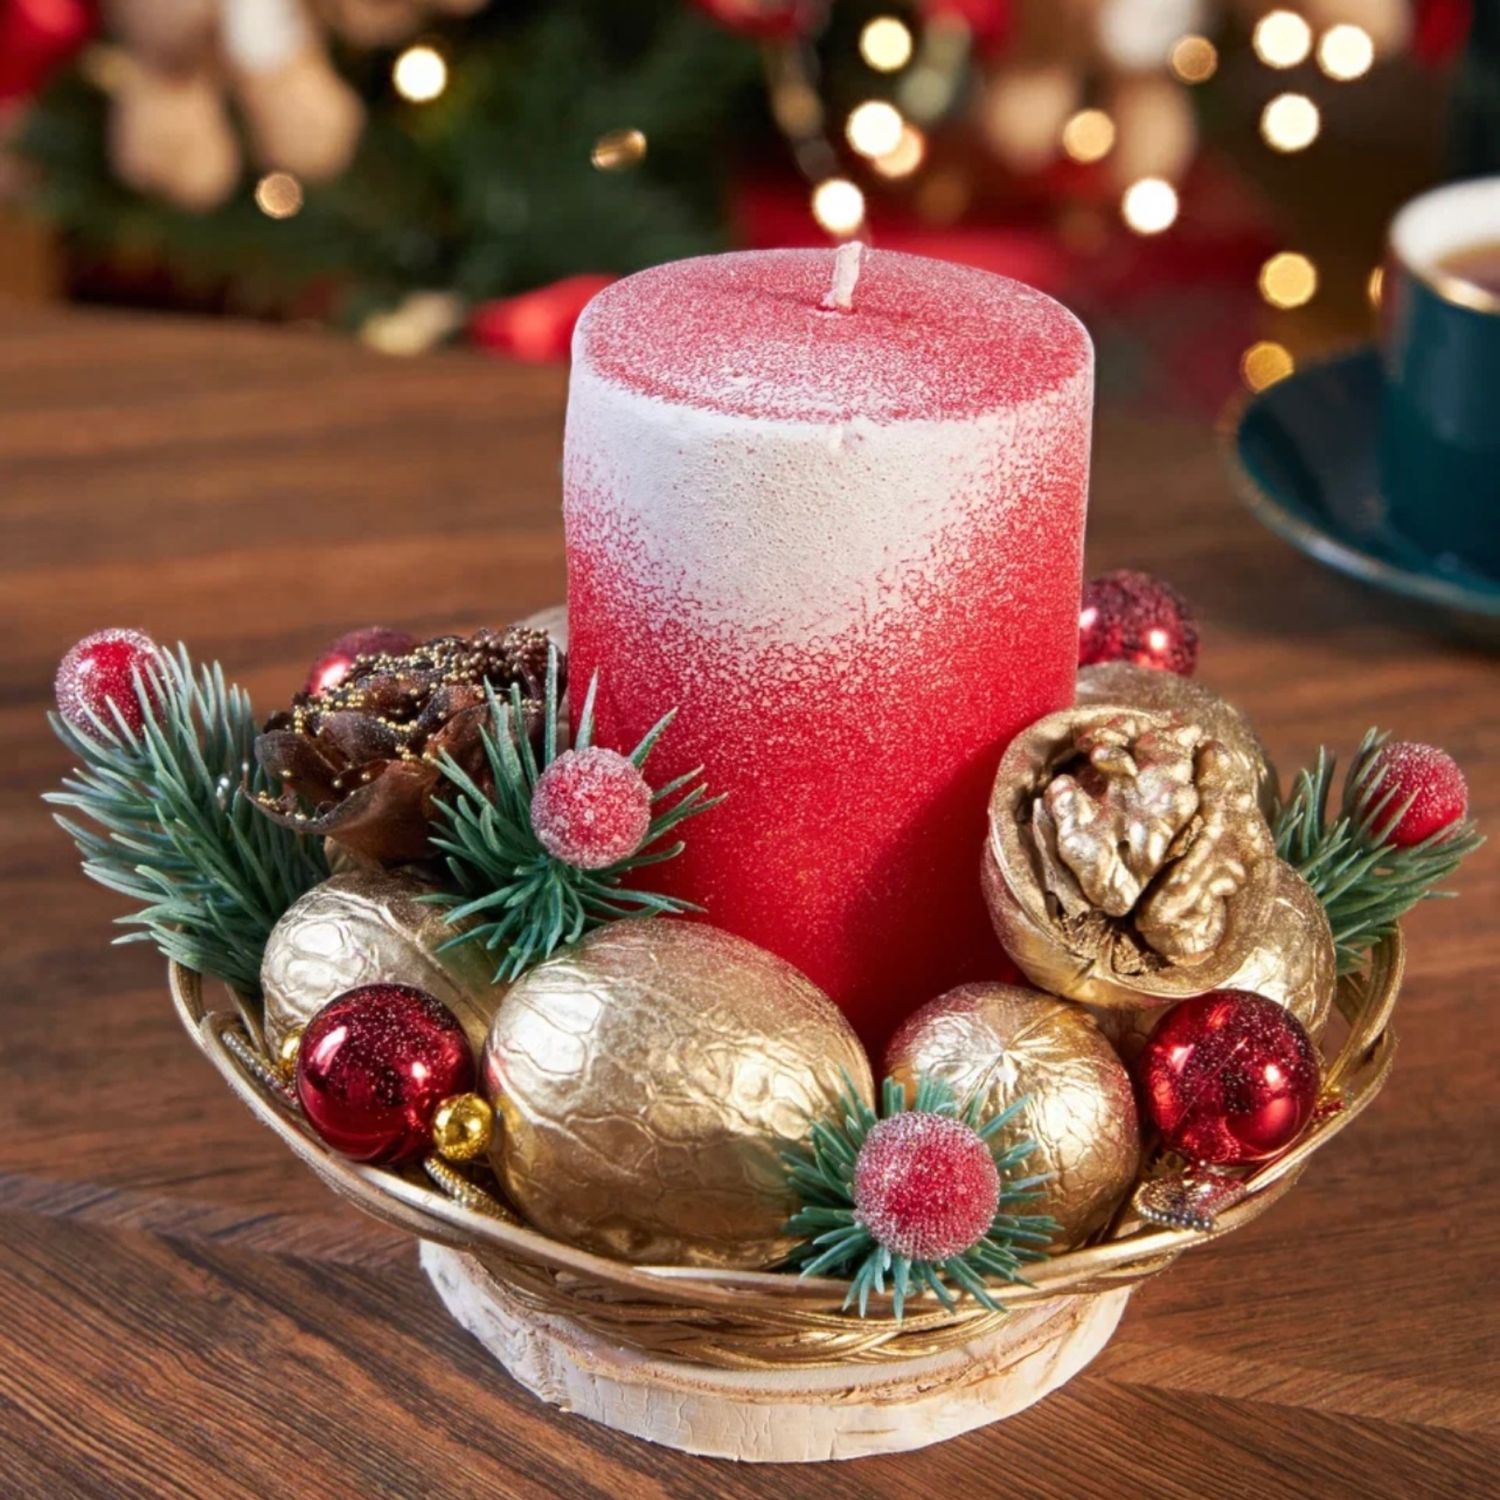 Оформляем новогодний стол: 7 оригинальных идей праздничный свечей